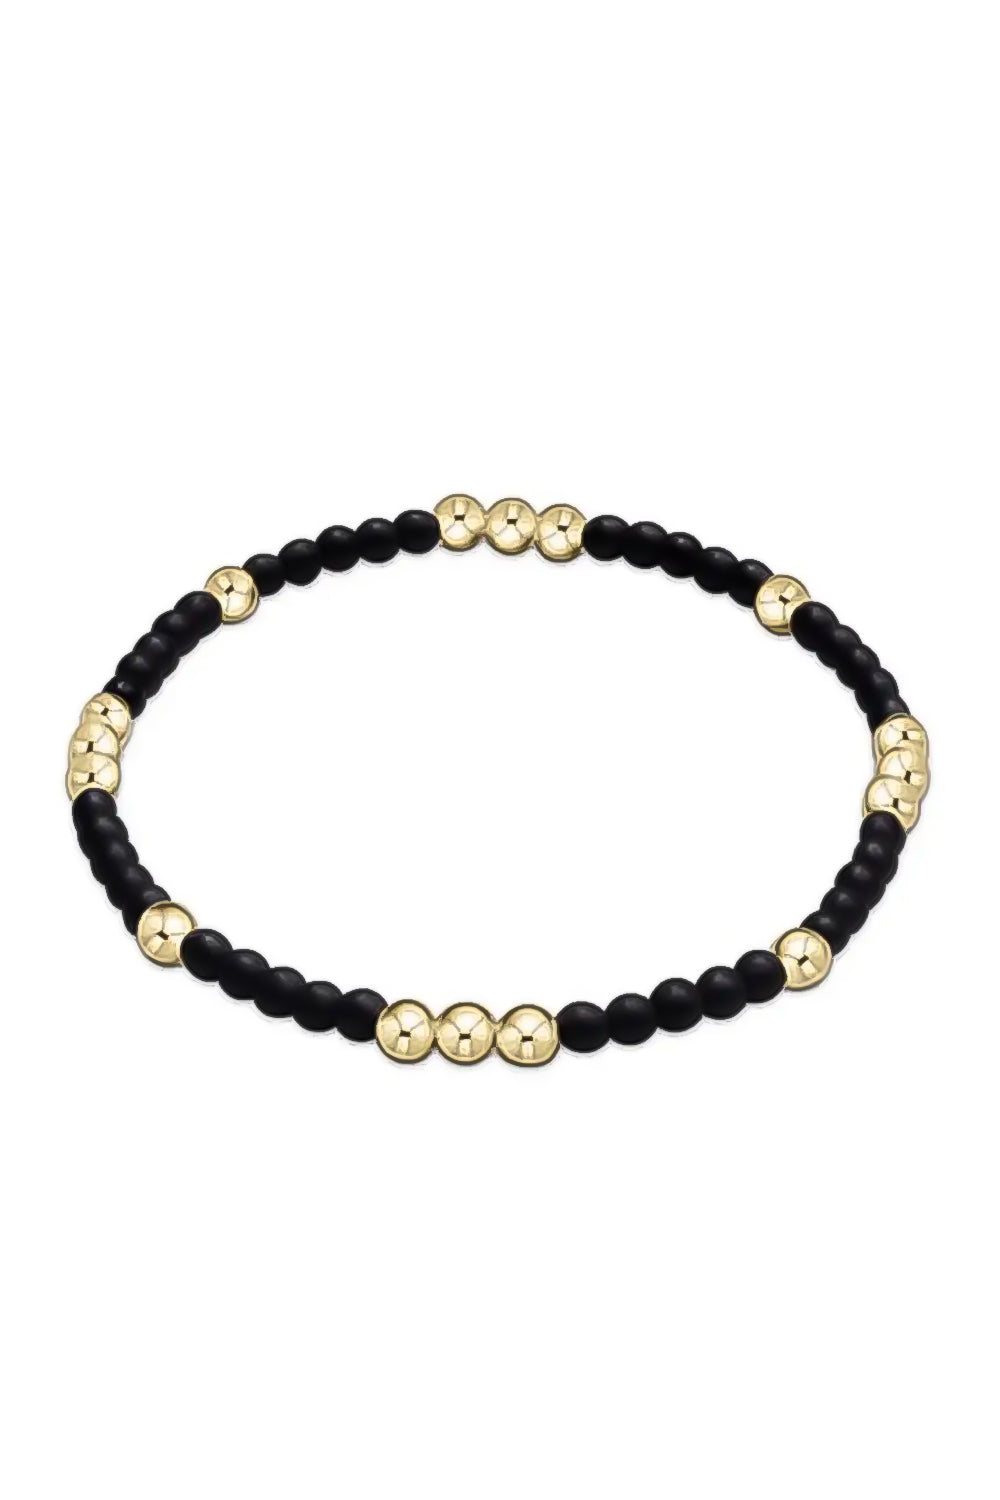 enewton: Worthy Pattern 3mm Bead Bracelet - Matte Onyx | Makk Fashions